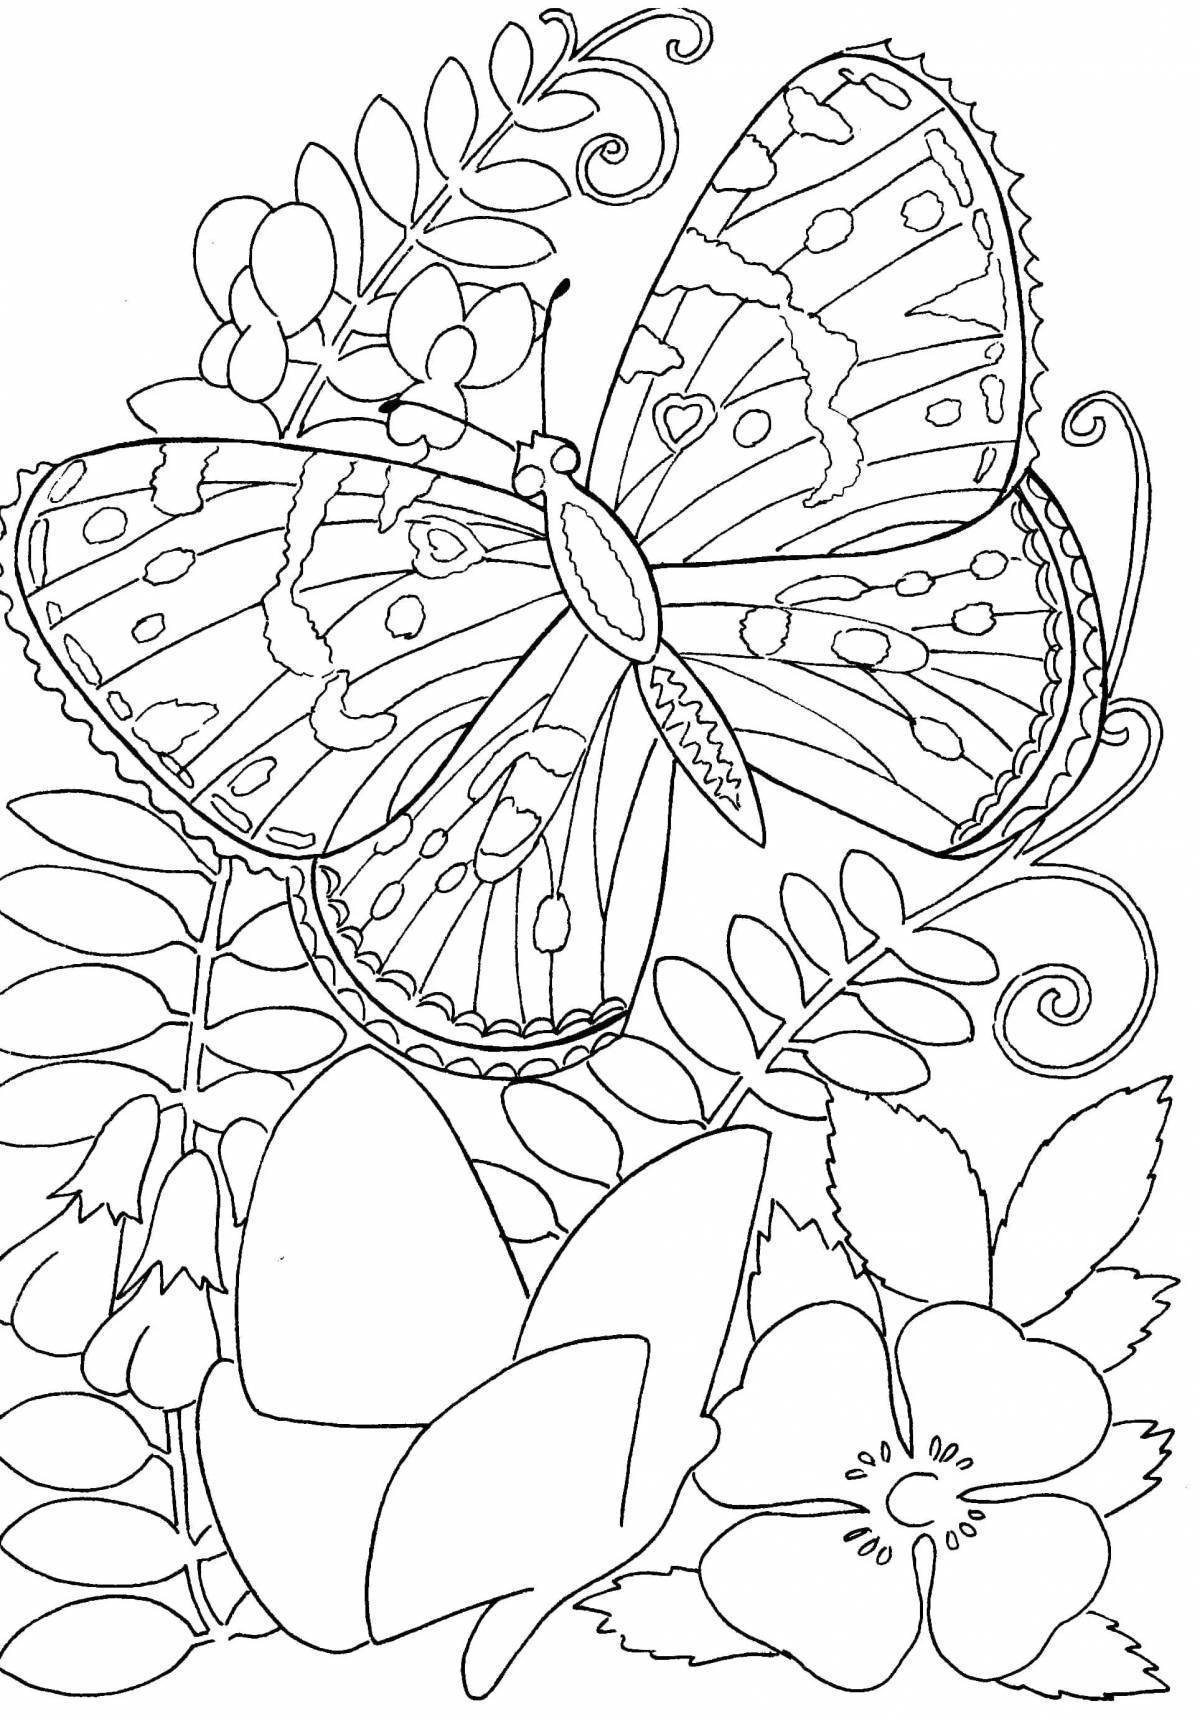 Раскраска очень красивая распечатать. Раскраска "бабочки". Рисунки для раскрашивания. Цветы и бабочки. Раскраска. Раскраска бабочка с цветами.